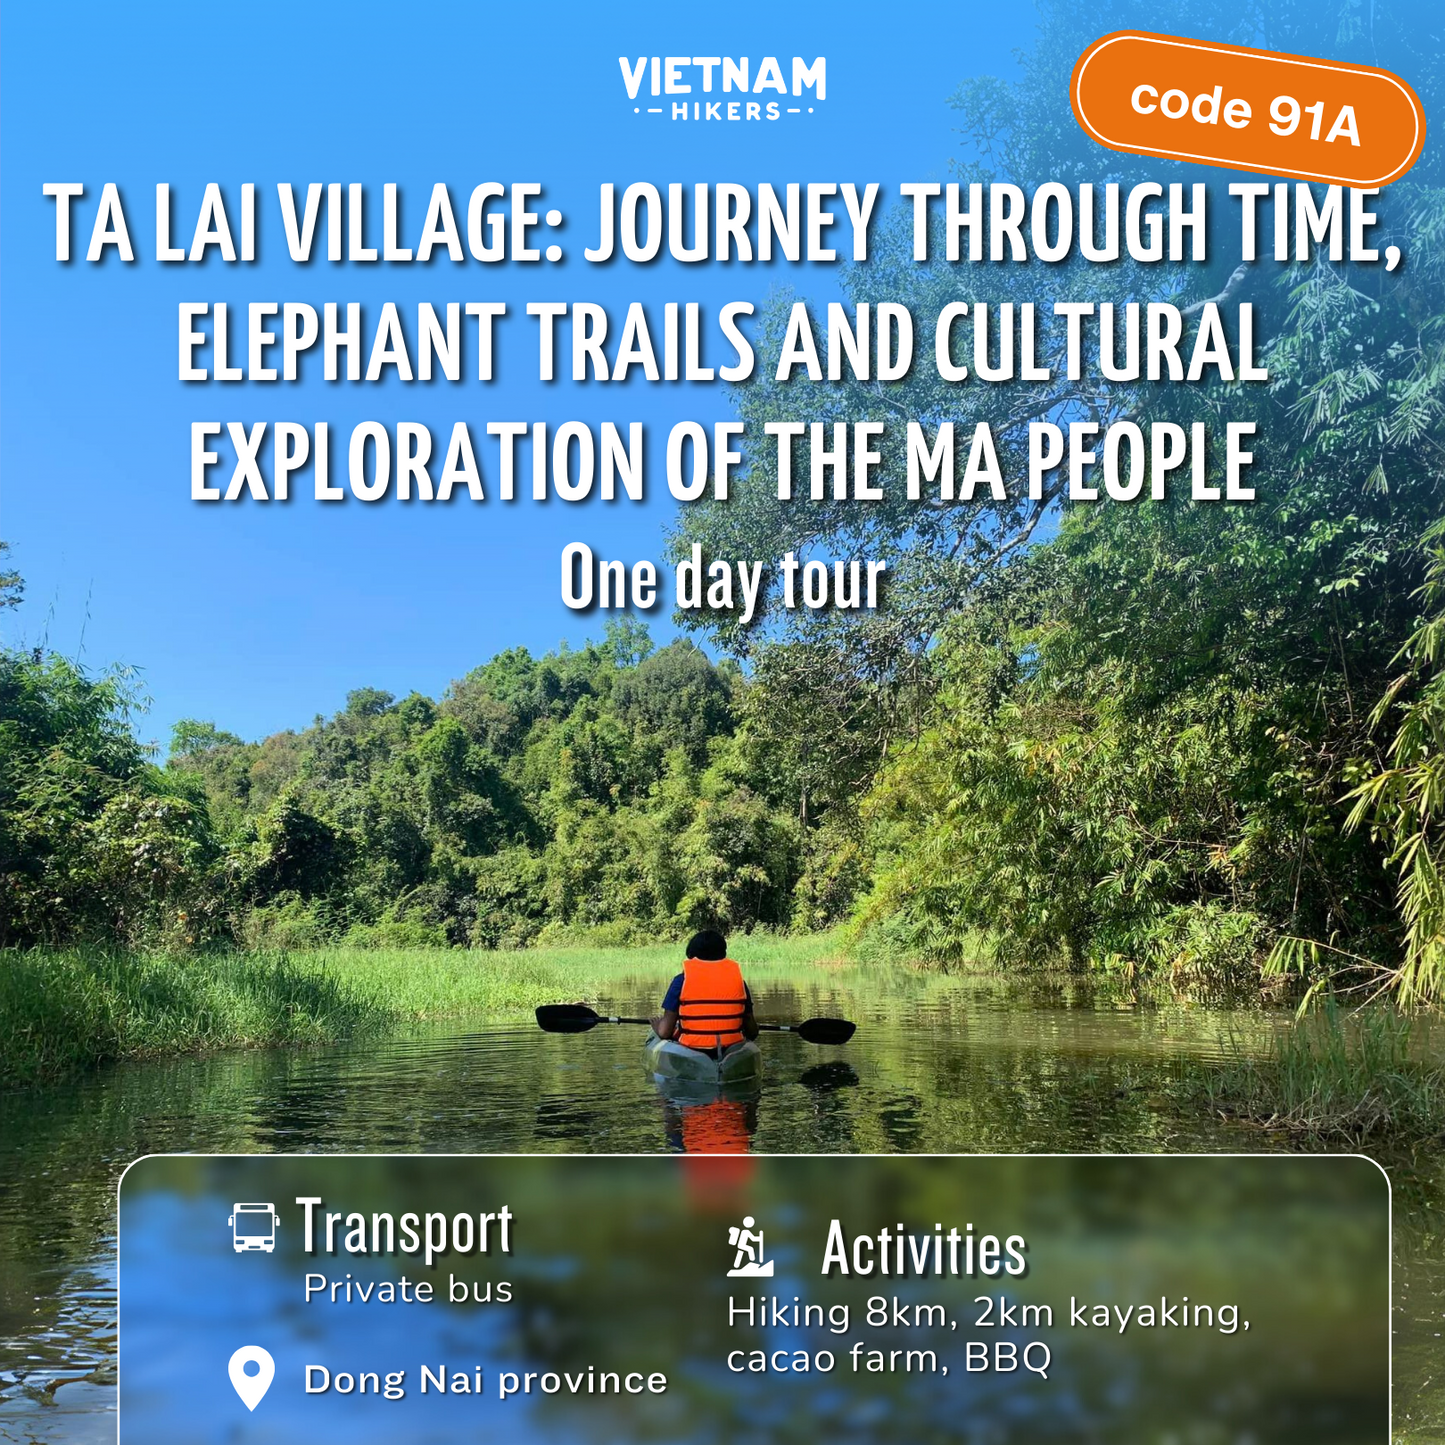 91A : Visite d'une journée complète, village de Ta Lai : voyage dans le temps, sentiers d'éléphants et exploration culturelle du peuple Ma